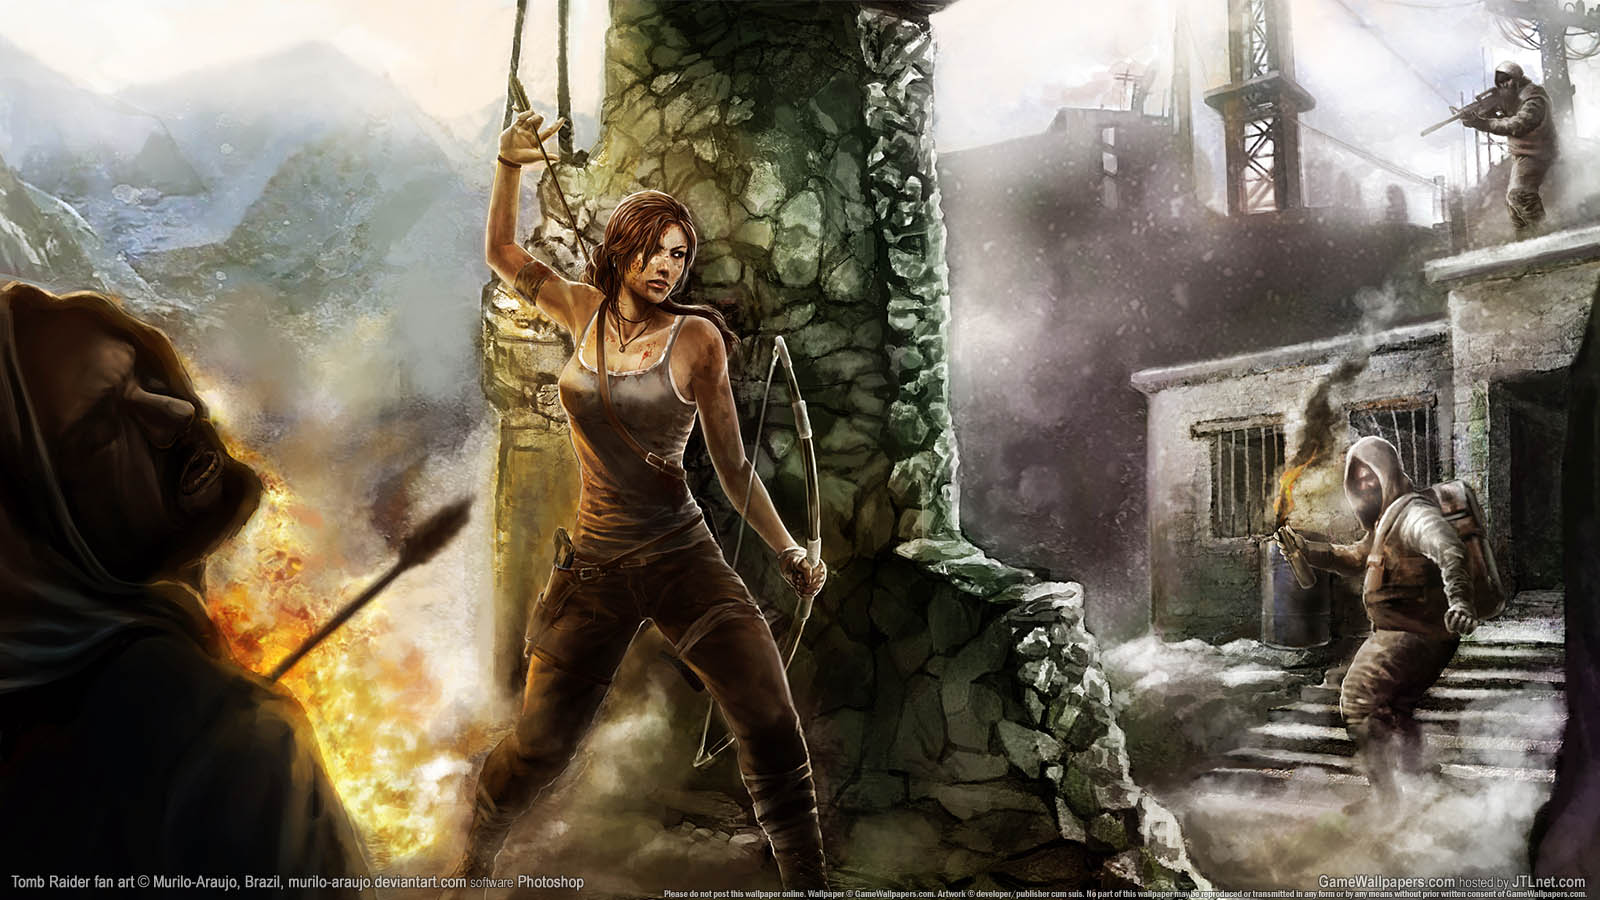 Tomb Raider fan art achtergrond 02 1600x900